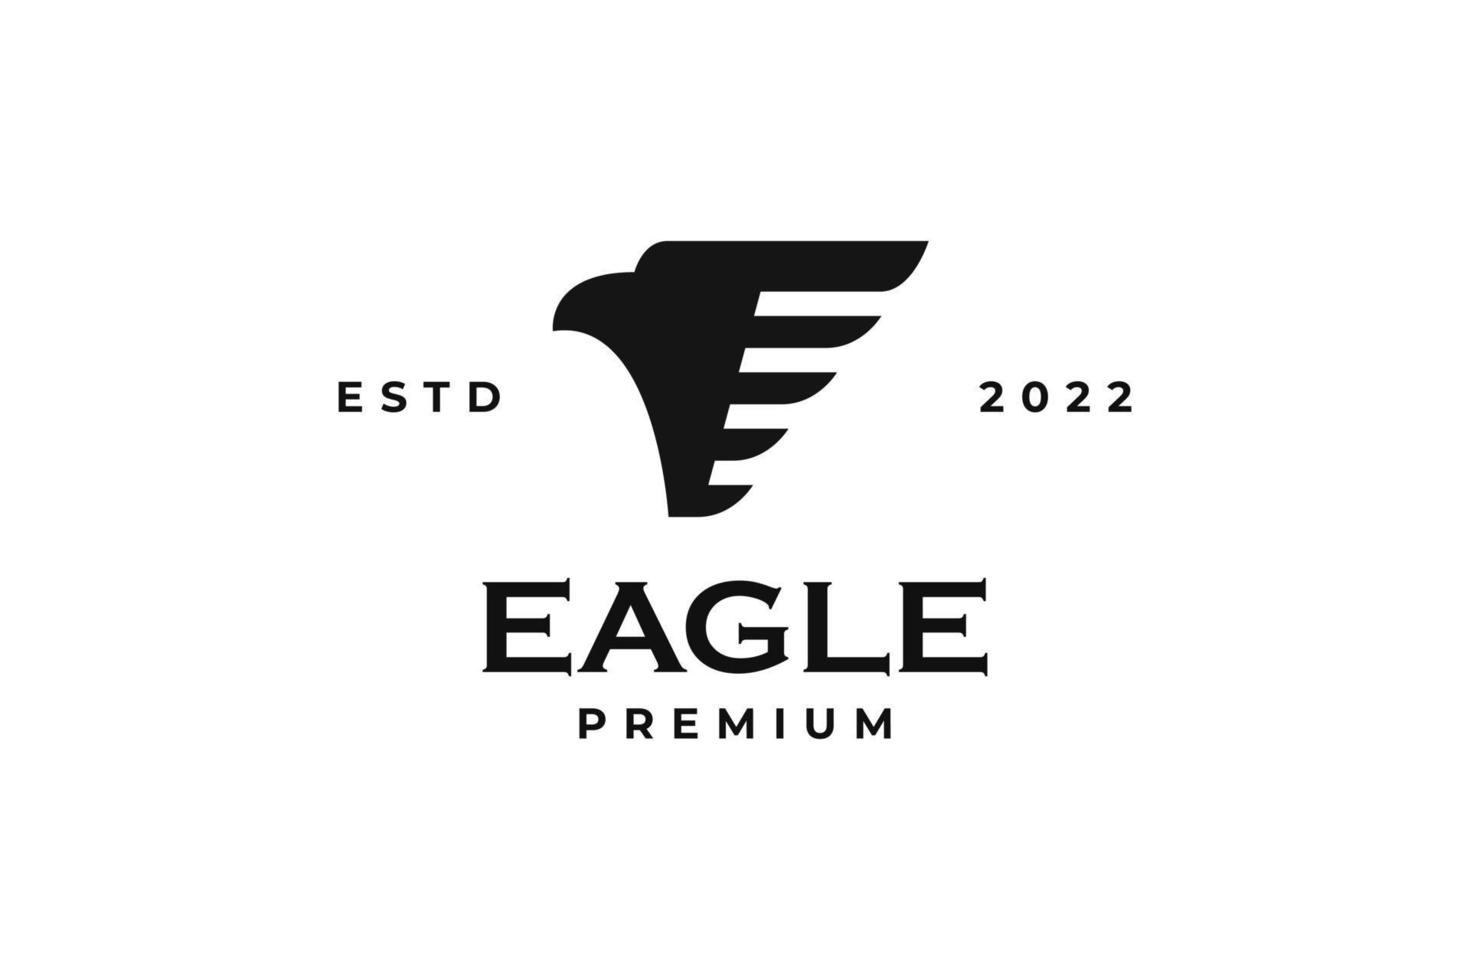 Wing eagle logo design vector